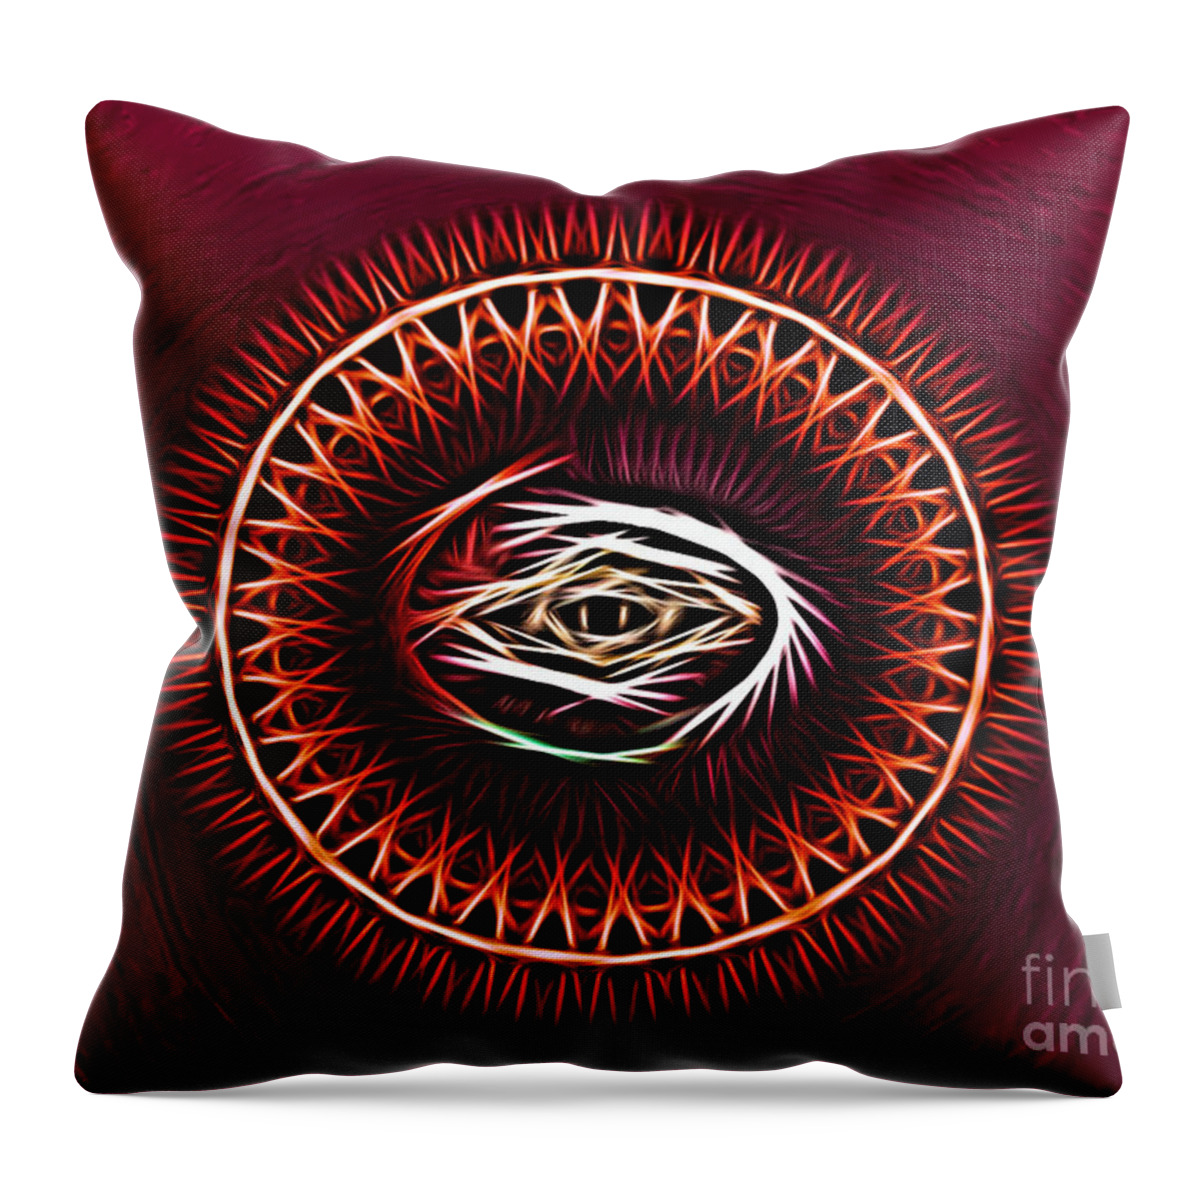 Art Throw Pillow featuring the digital art HJ-Eye by Vix Edwards